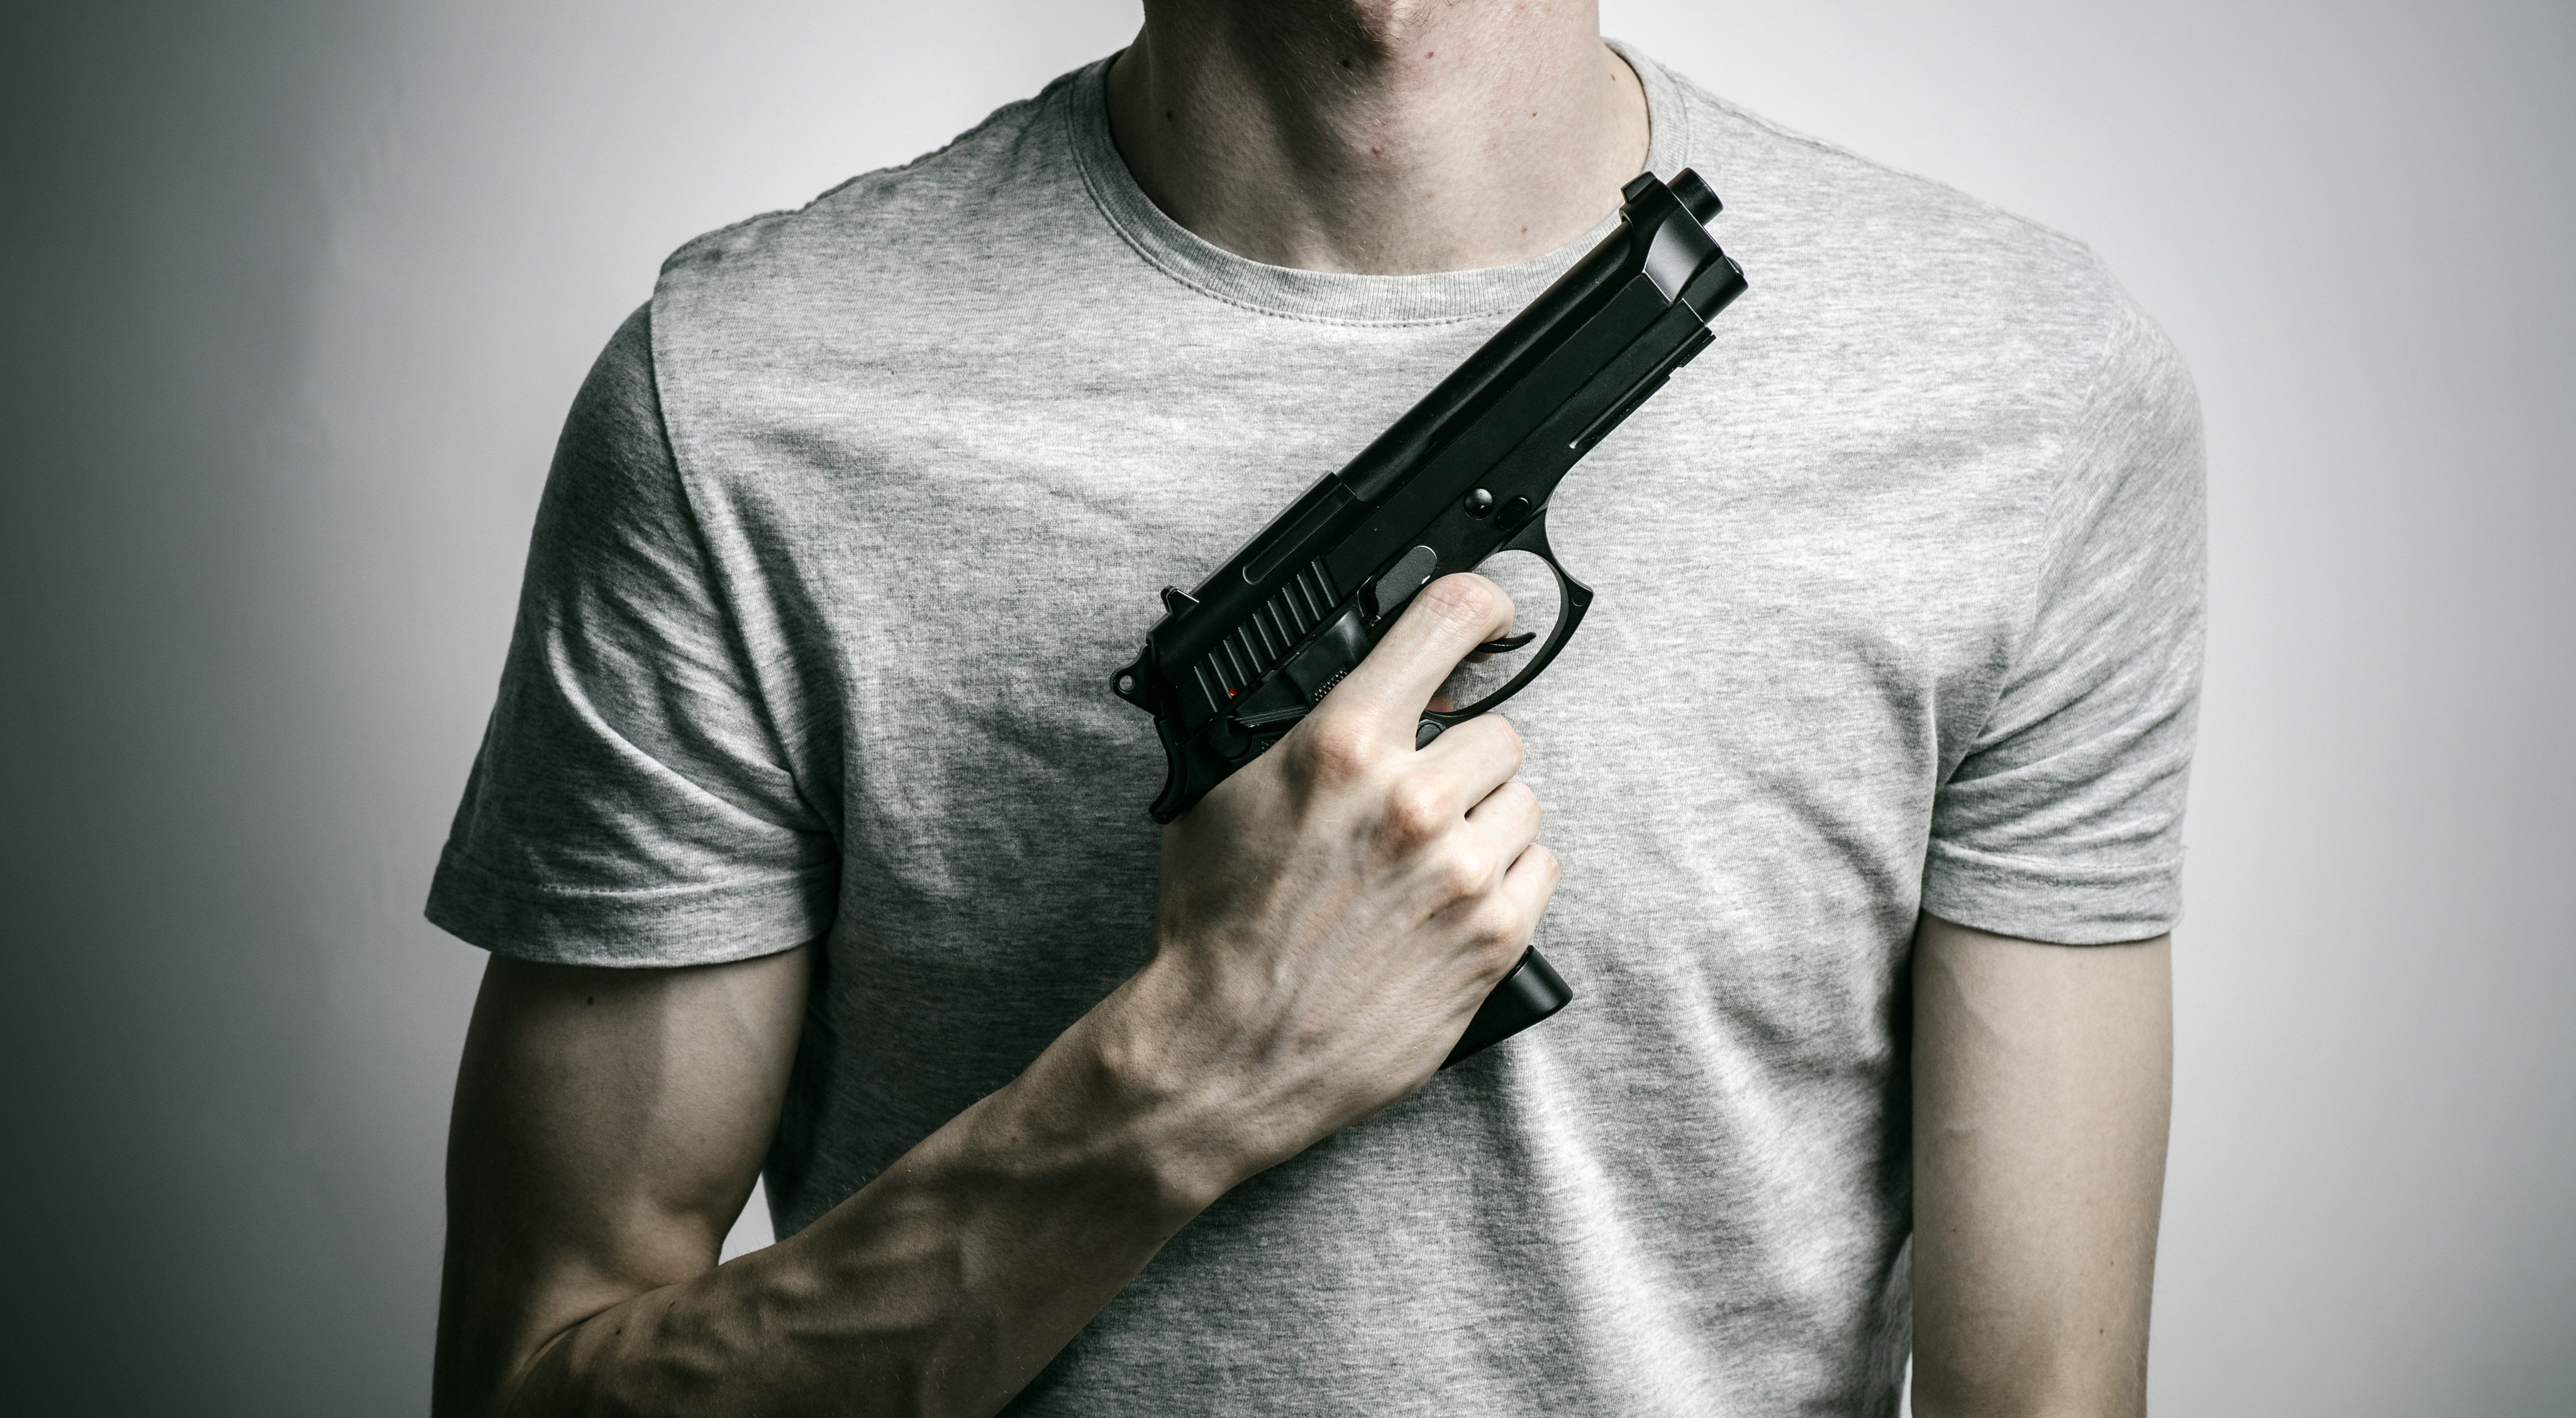 Мужская рука с пистолетом